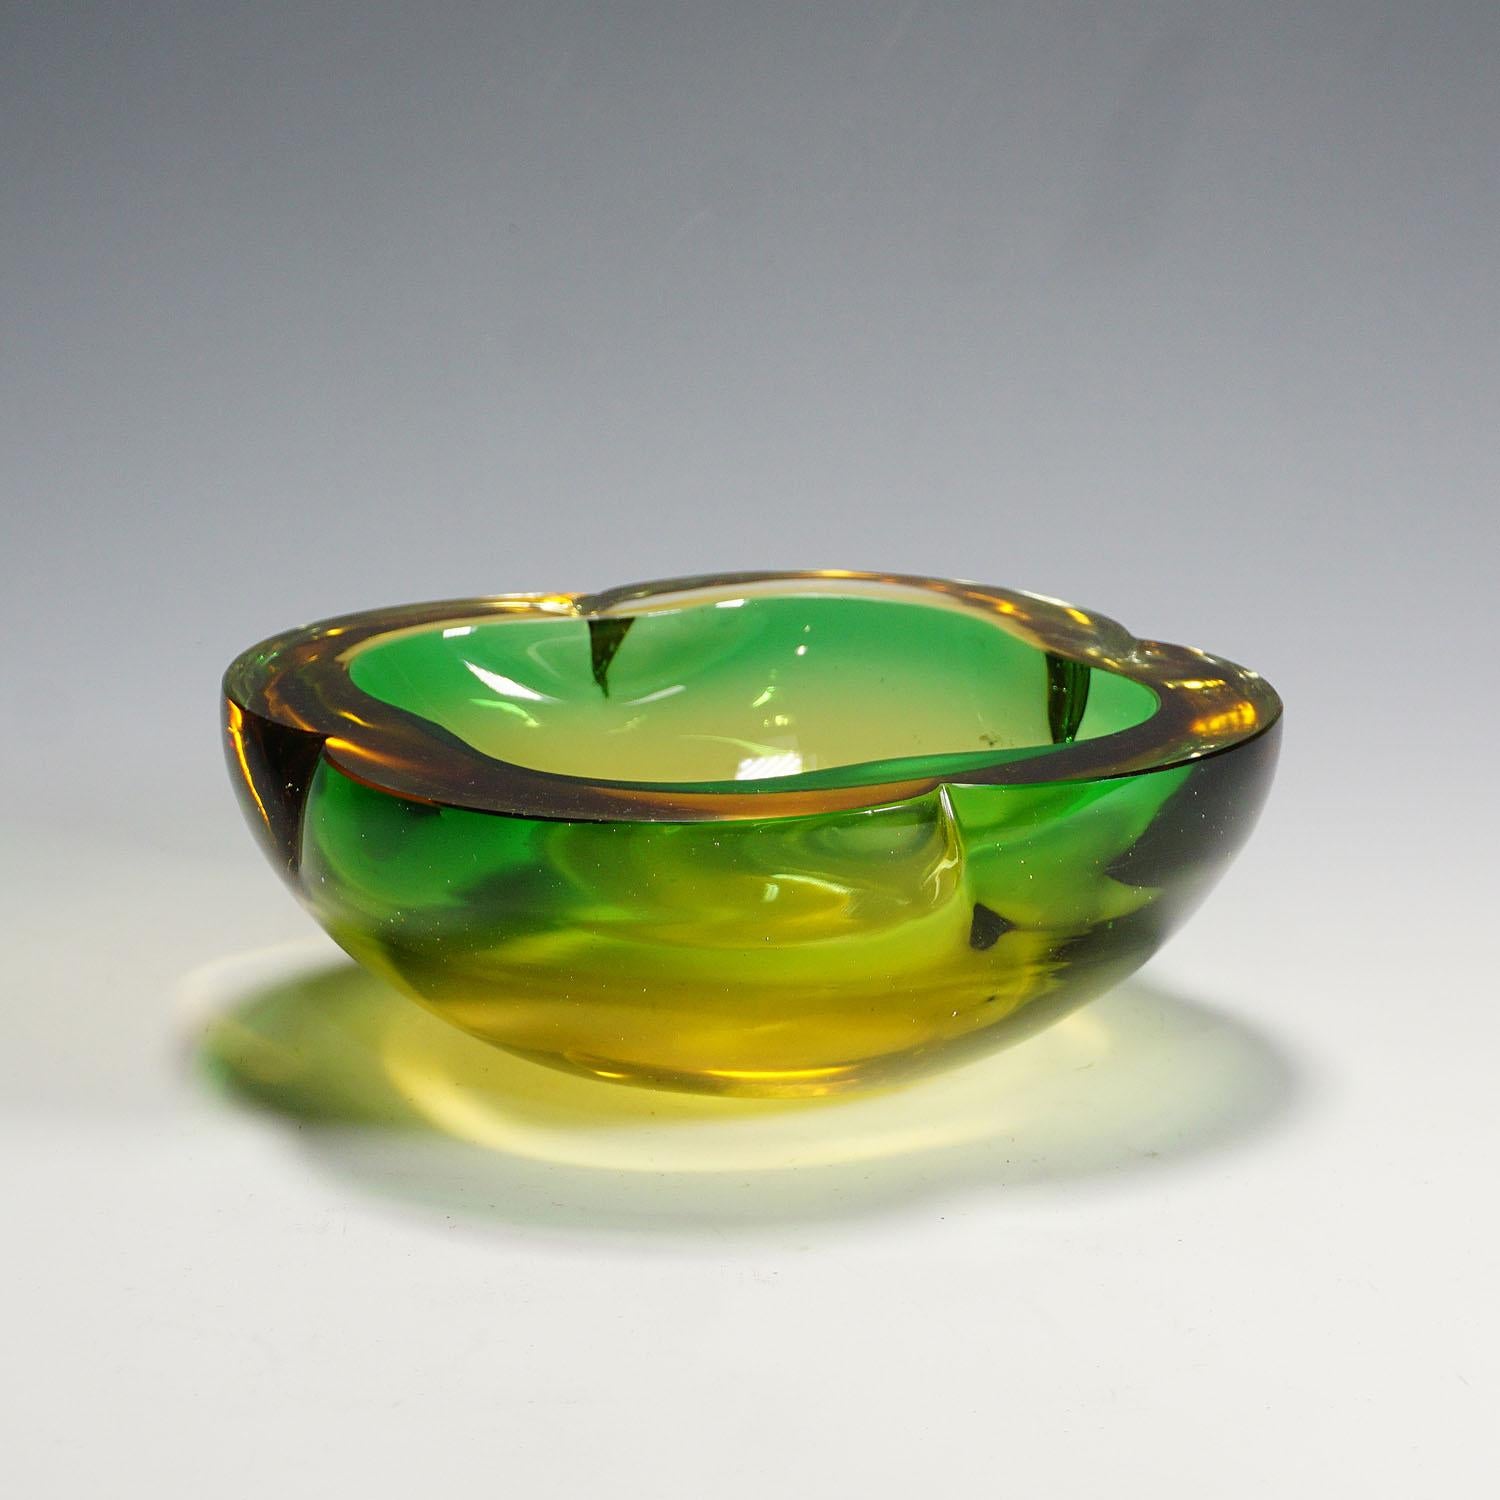 Un lourd bol en verre de Murano sommerso très probablement fabriqué par Seguso Vetri d'Arte vers les années 1950. Fabriqué en verre vert avec une épaisse couche de verre ambré. Un design classique des années 60 qui met en valeur chaque table ou